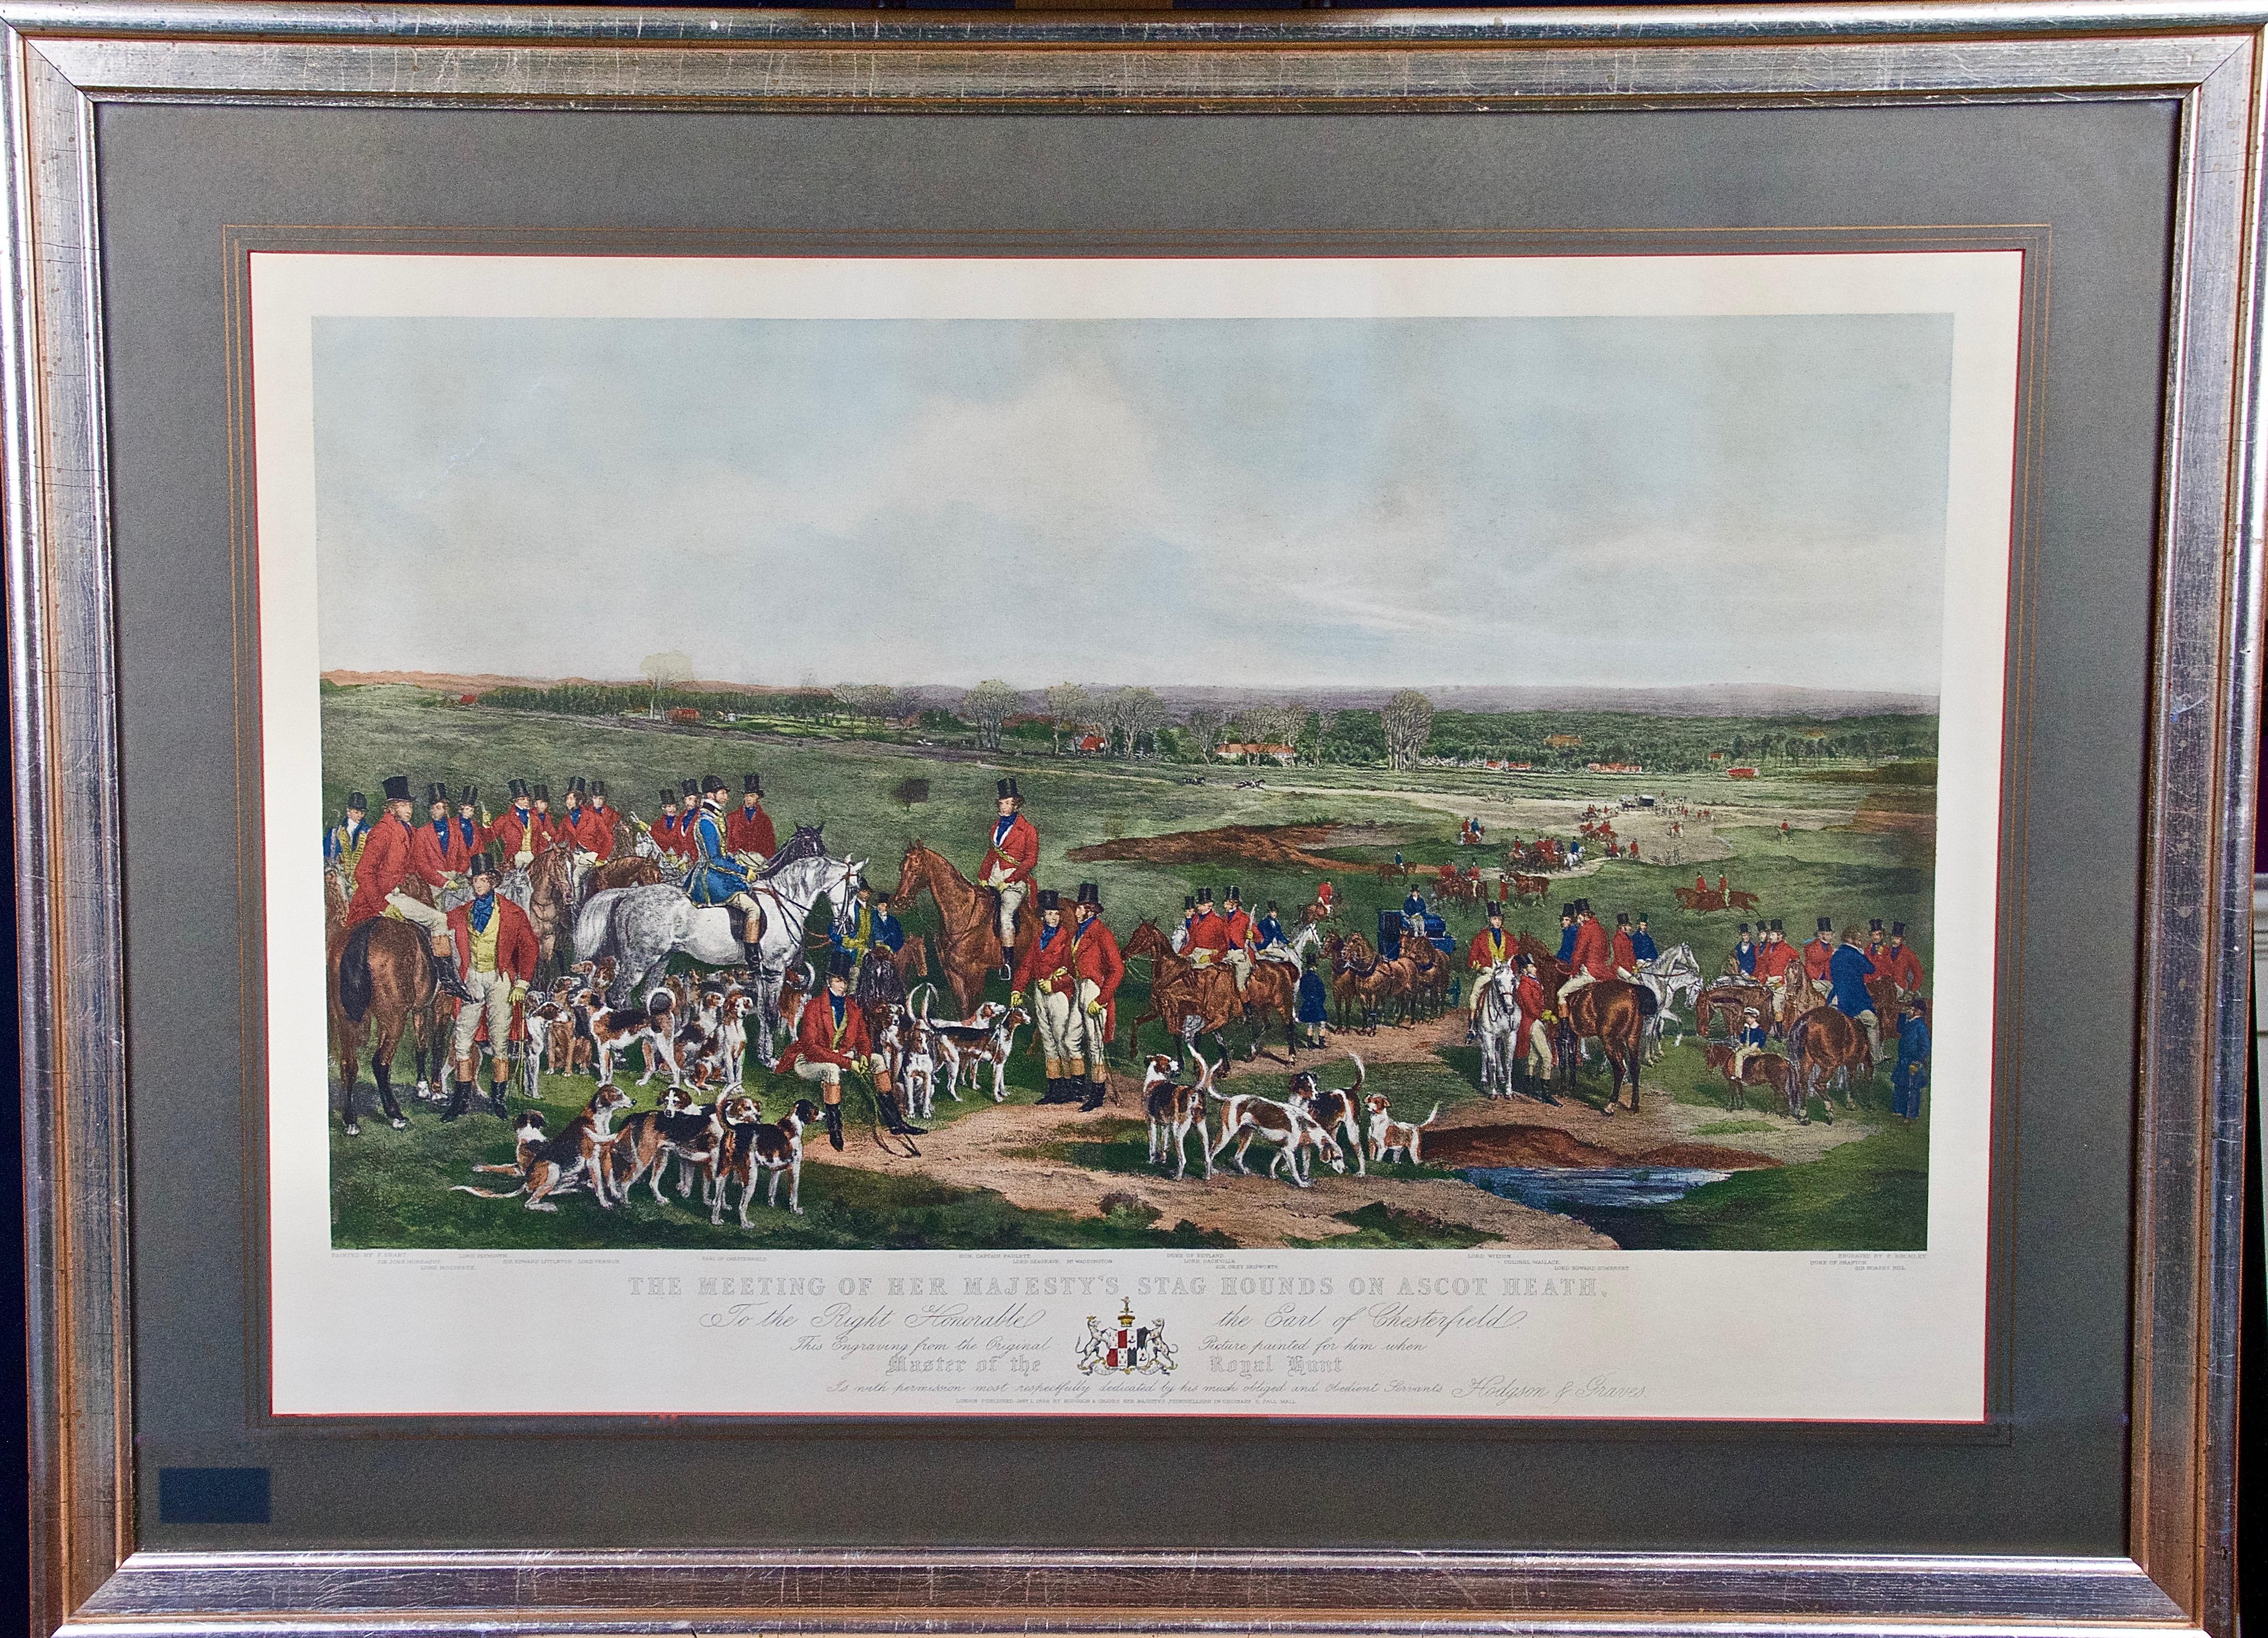 Her Majesty's Hirschhunde auf Ascot, farbige britische Jagdszene des 19. Jahrhunderts